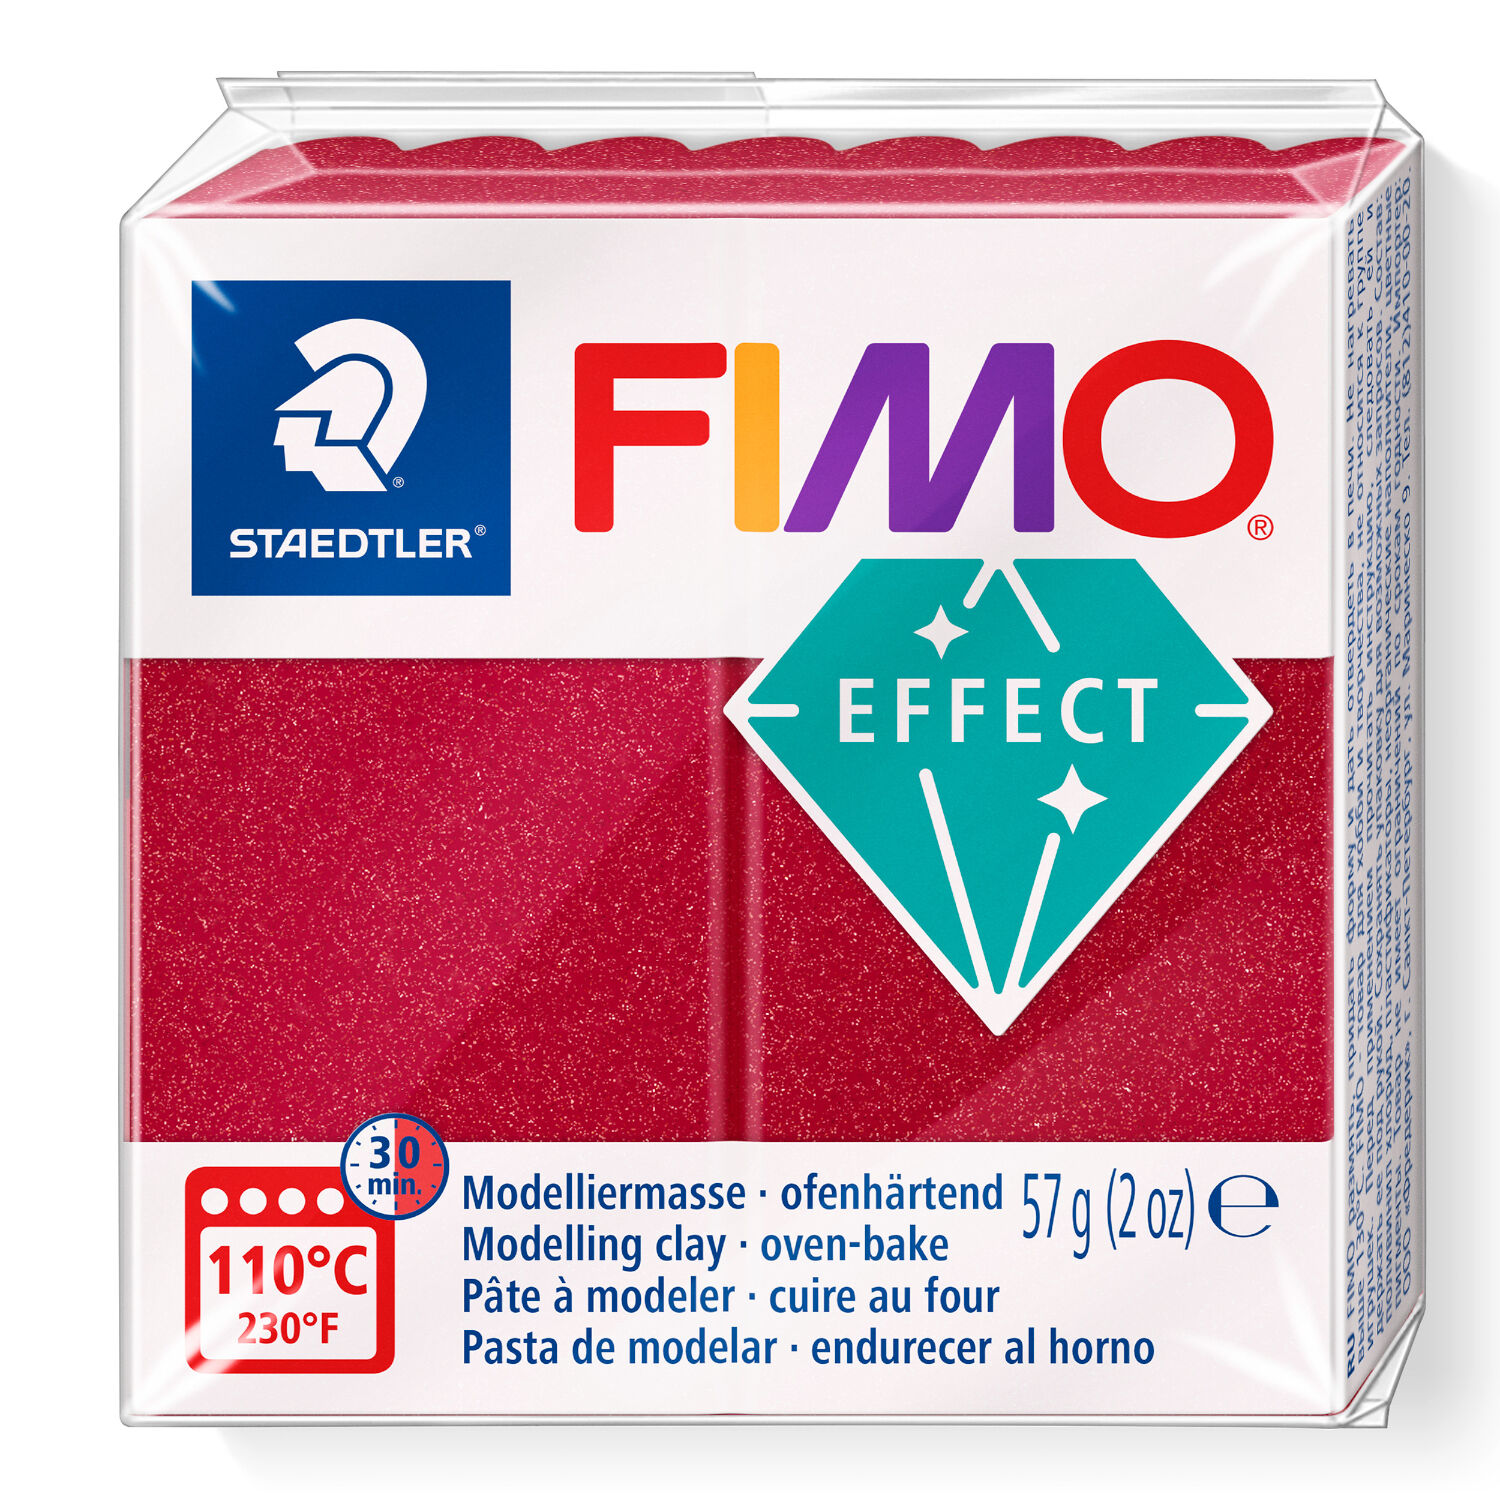 SALE Fimo Effect 57g, Metallic-Rubinrot